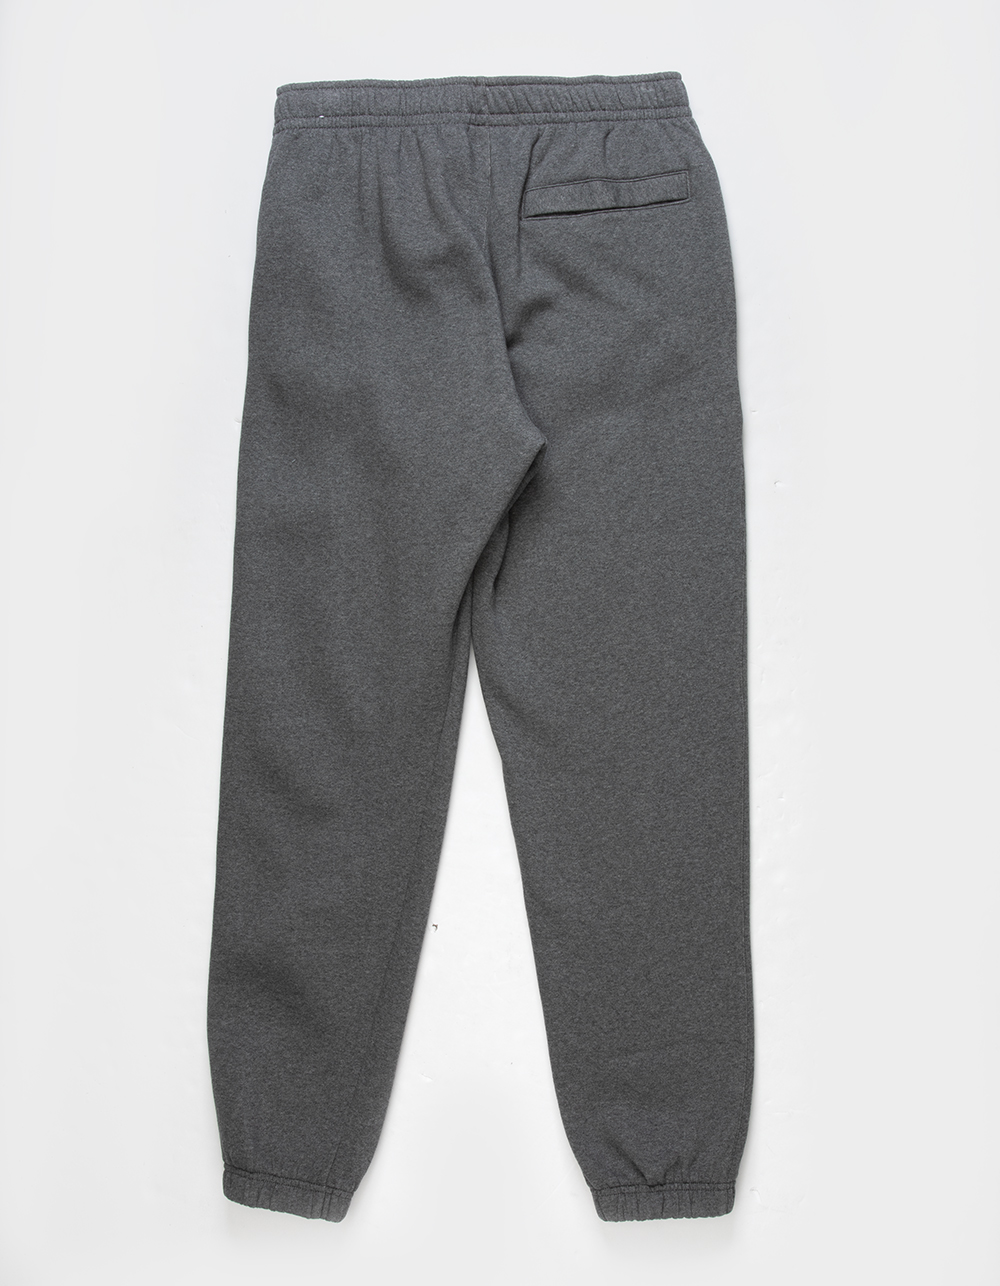 NIKE Sportswear Club Fleece Mens Sweatpants - CHARCOAL | Tillys